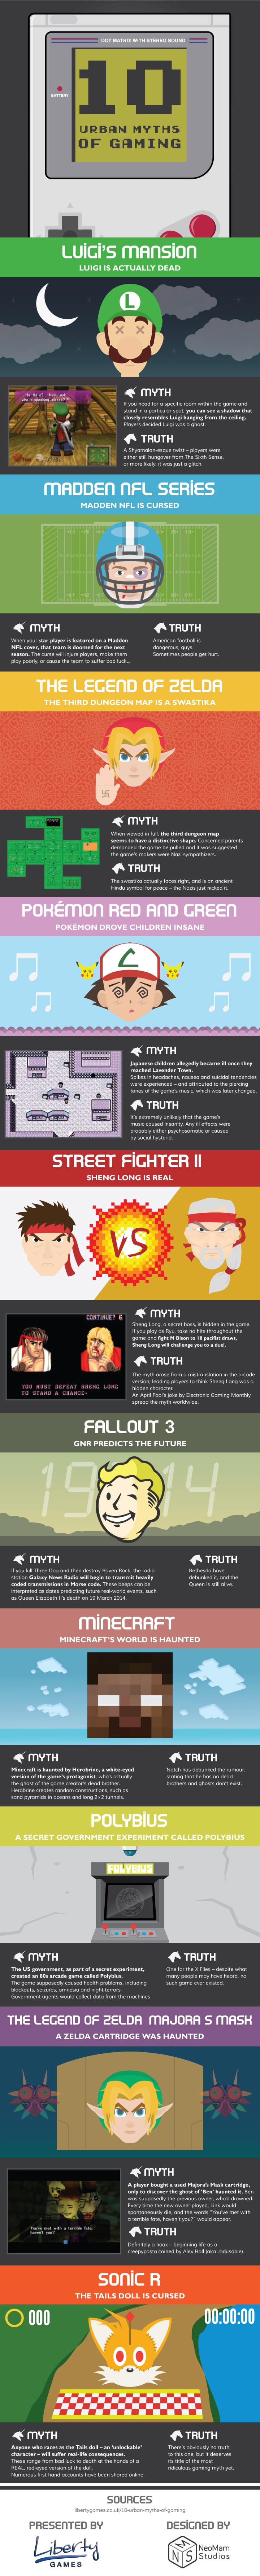 10-myths-of-gaming